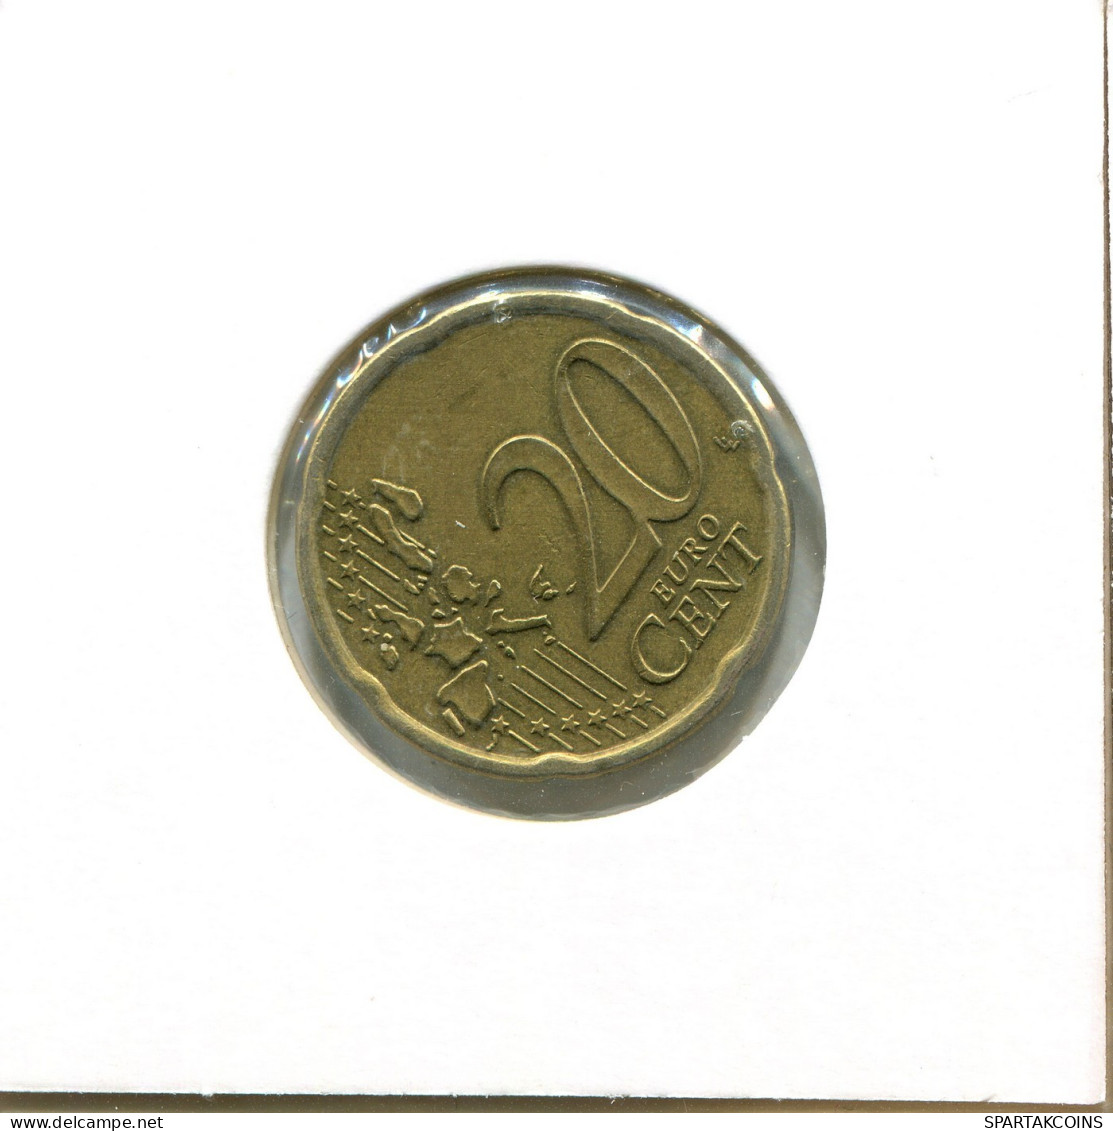 20 EURO CENTS 2004 ÖSTERREICH AUSTRIA Münze #EU393.D.A - Autriche